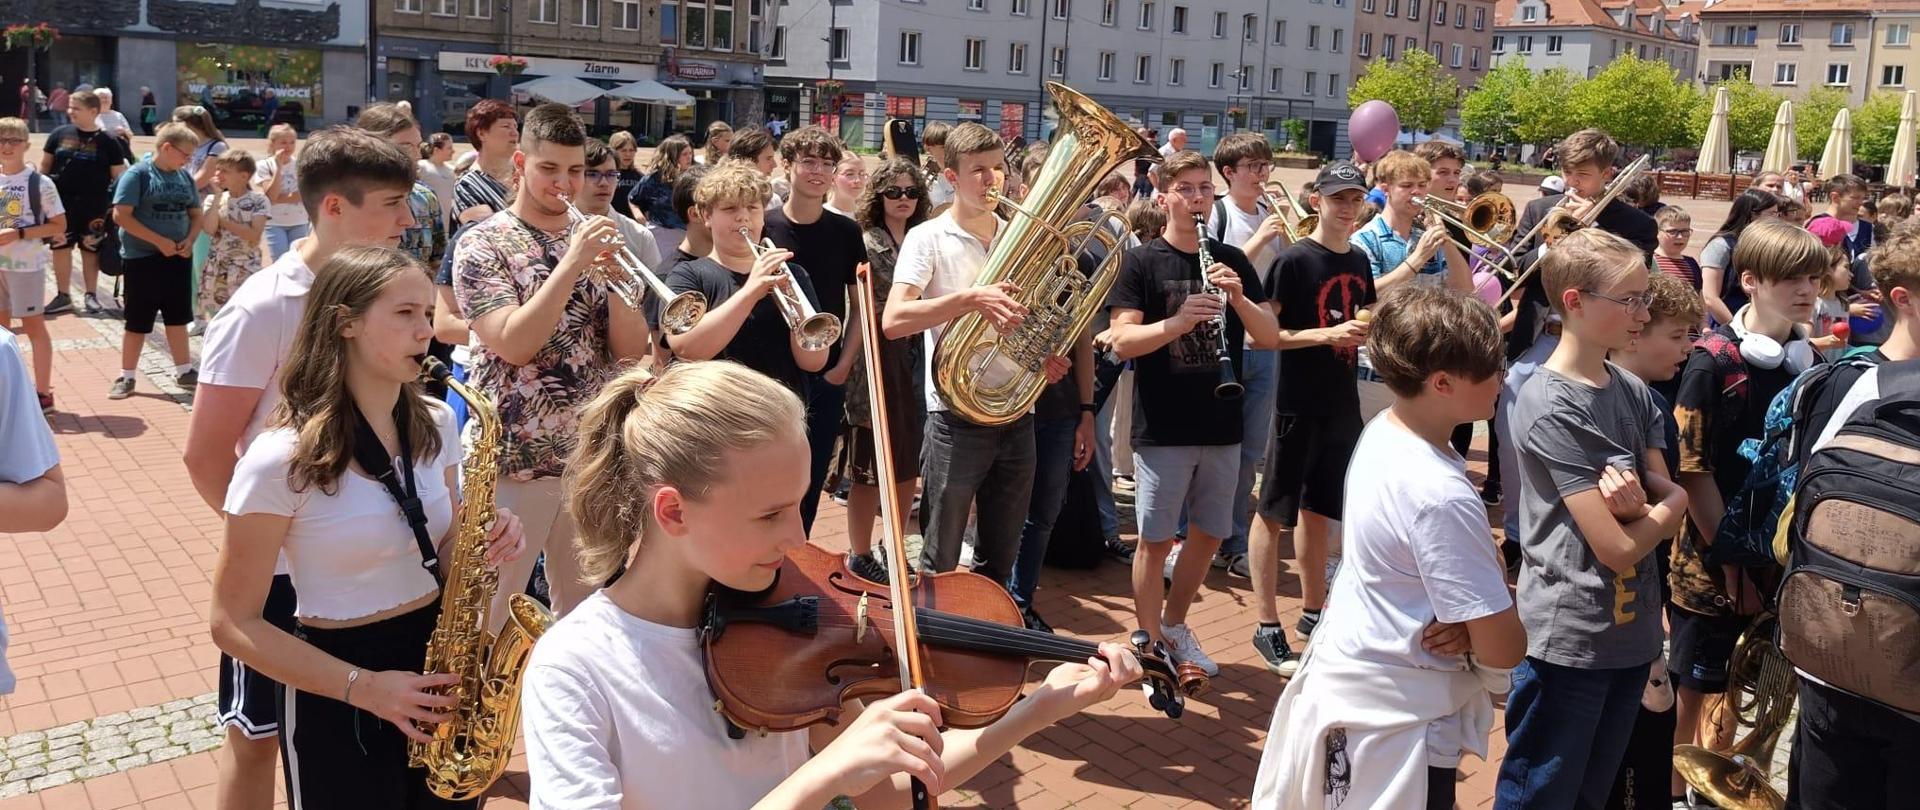 Uczniowie szkoły wzięli udział w akcji "Sto lat dla Miasta bytom". Zebrani na rynku miasta zagrali i zaśpiewali "1000 lat...".